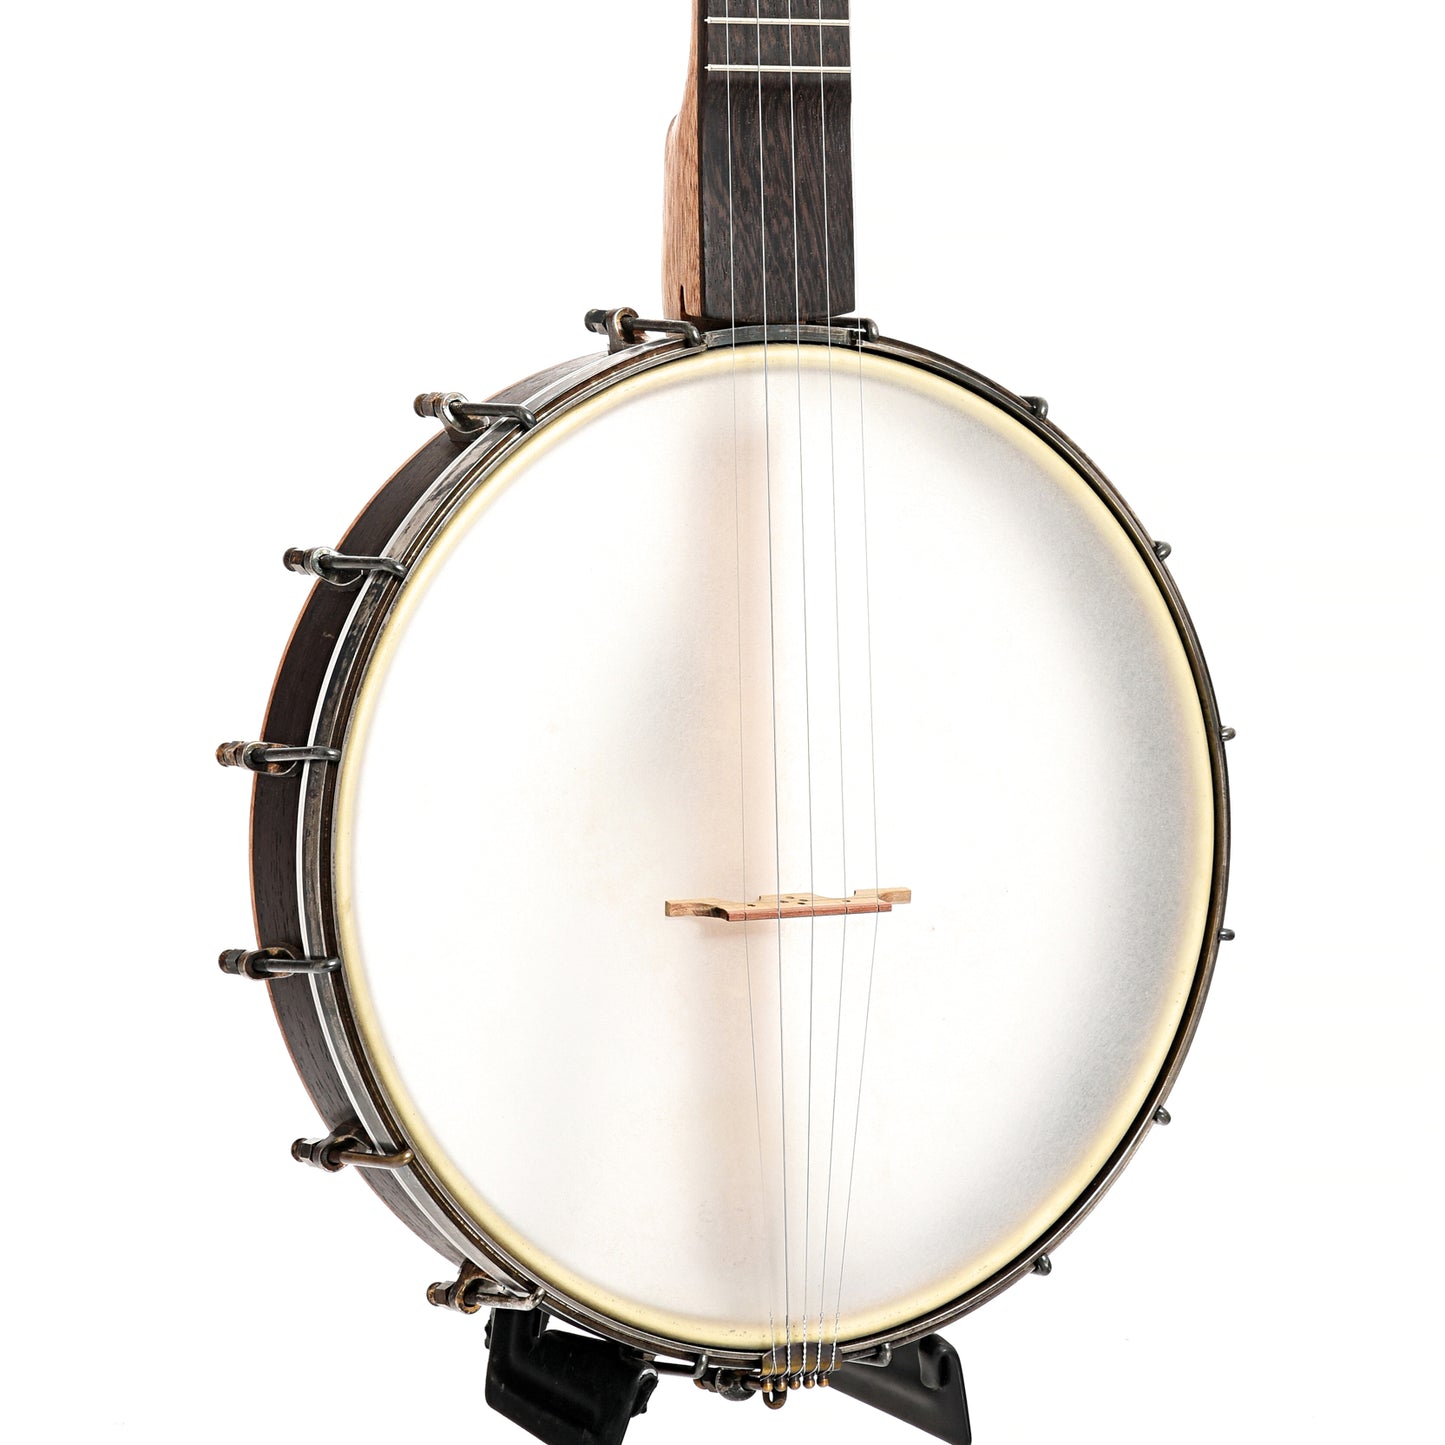 Image 3 of Dogwood Banjo Co. 12" Openback Banjo, No. 189, with Gigbag - SKU# DW189 : Product Type Open Back Banjos : Elderly Instruments